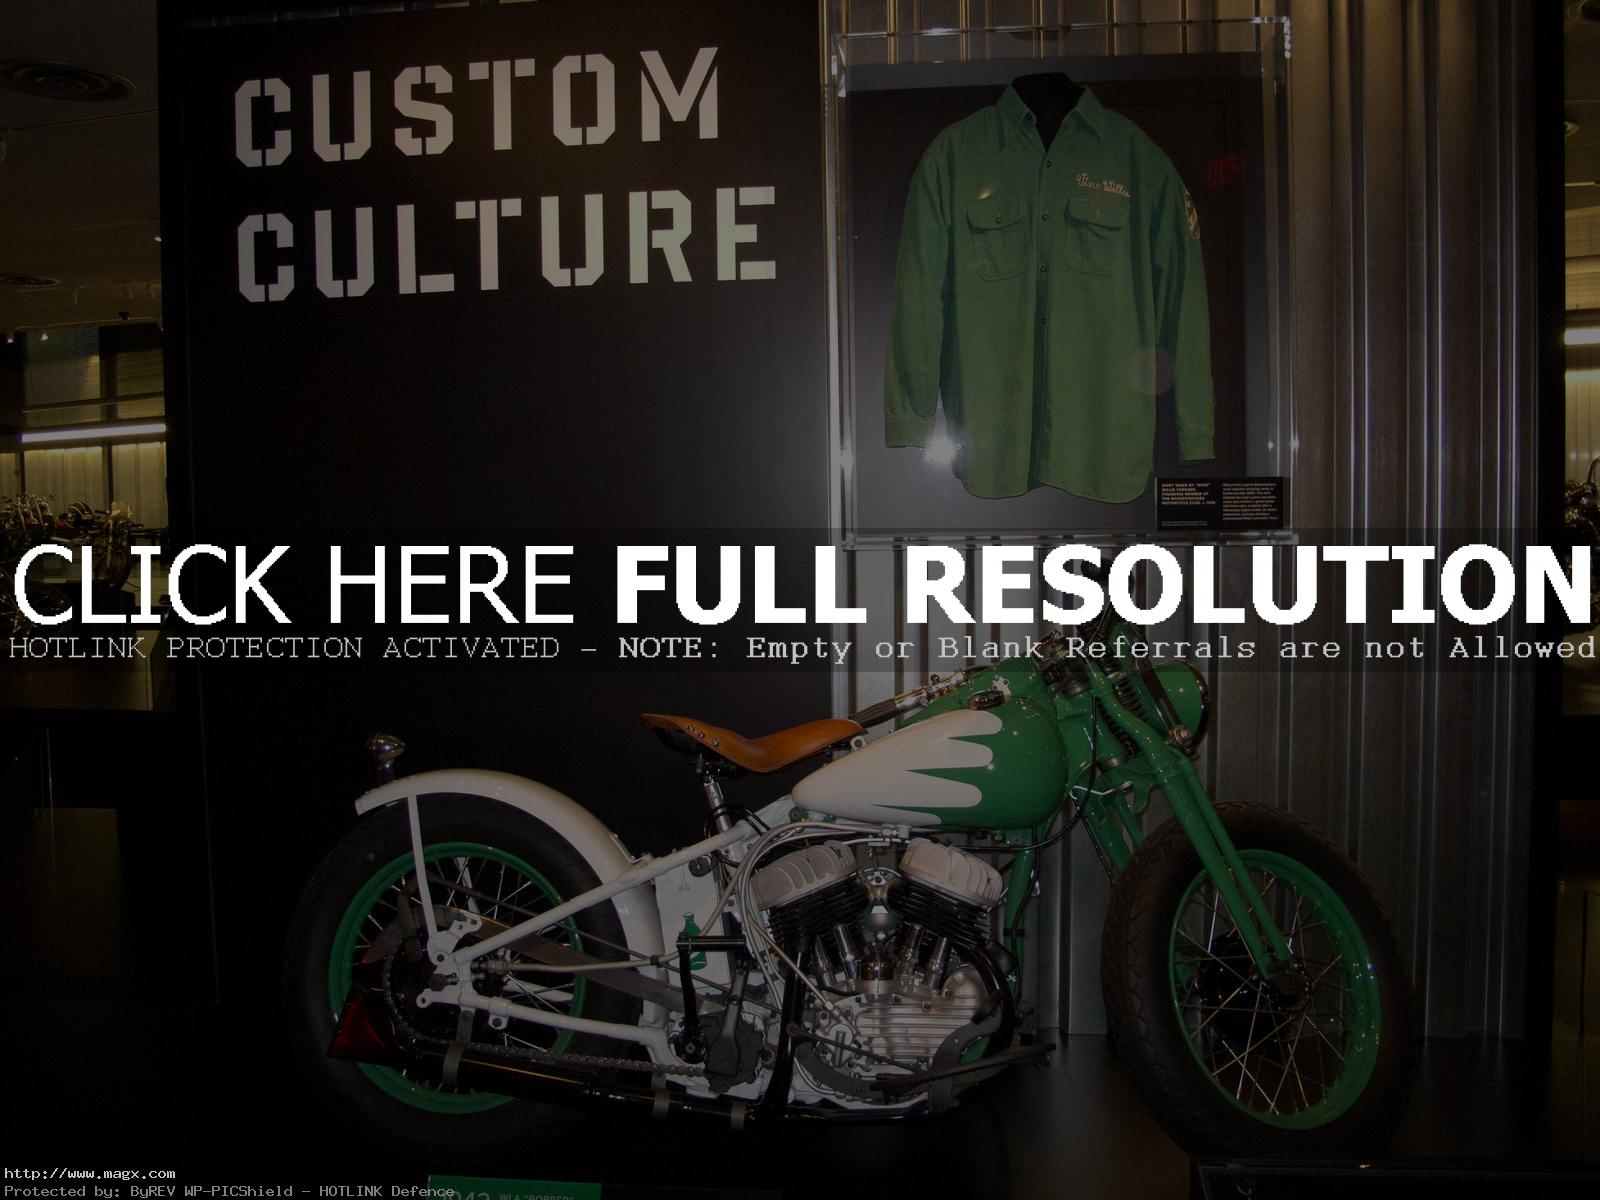 harley davidson museum16 Harley Davidson Museum in Milwaukee